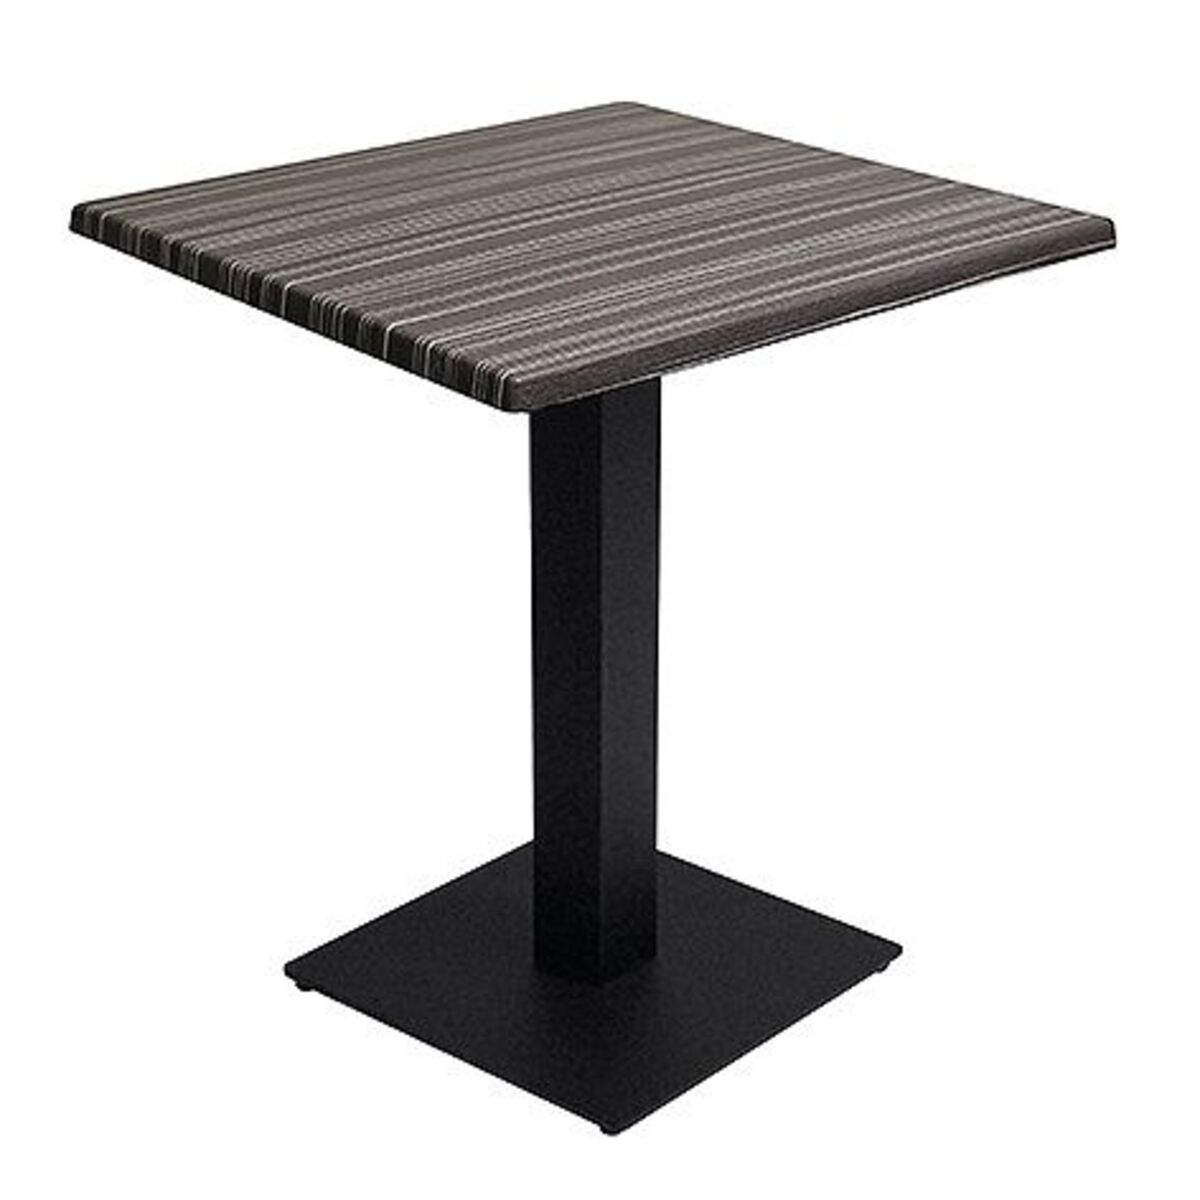 Table intérieure pied noir base carrée & plateau werzalit noir 60x60 cm